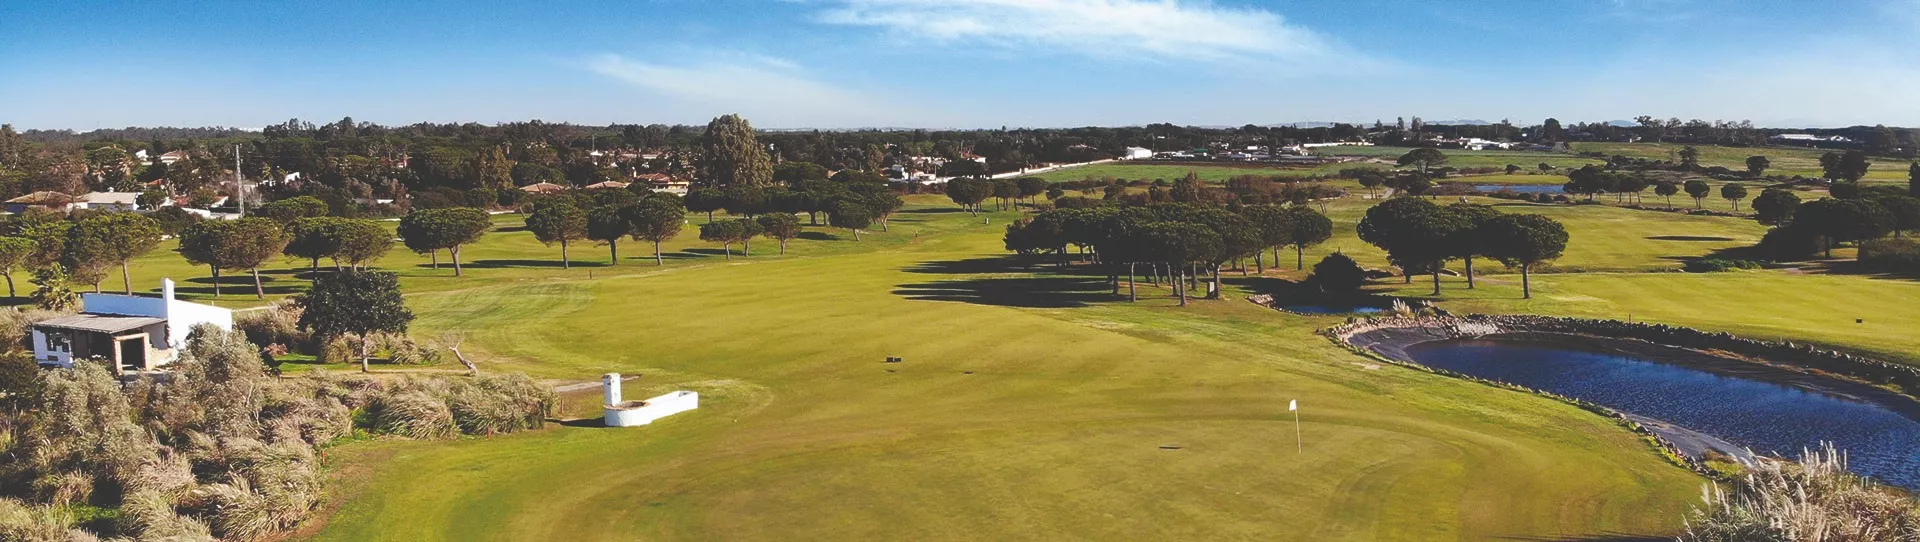 Spain golf courses - La Estancia Golf Course - Photo 1